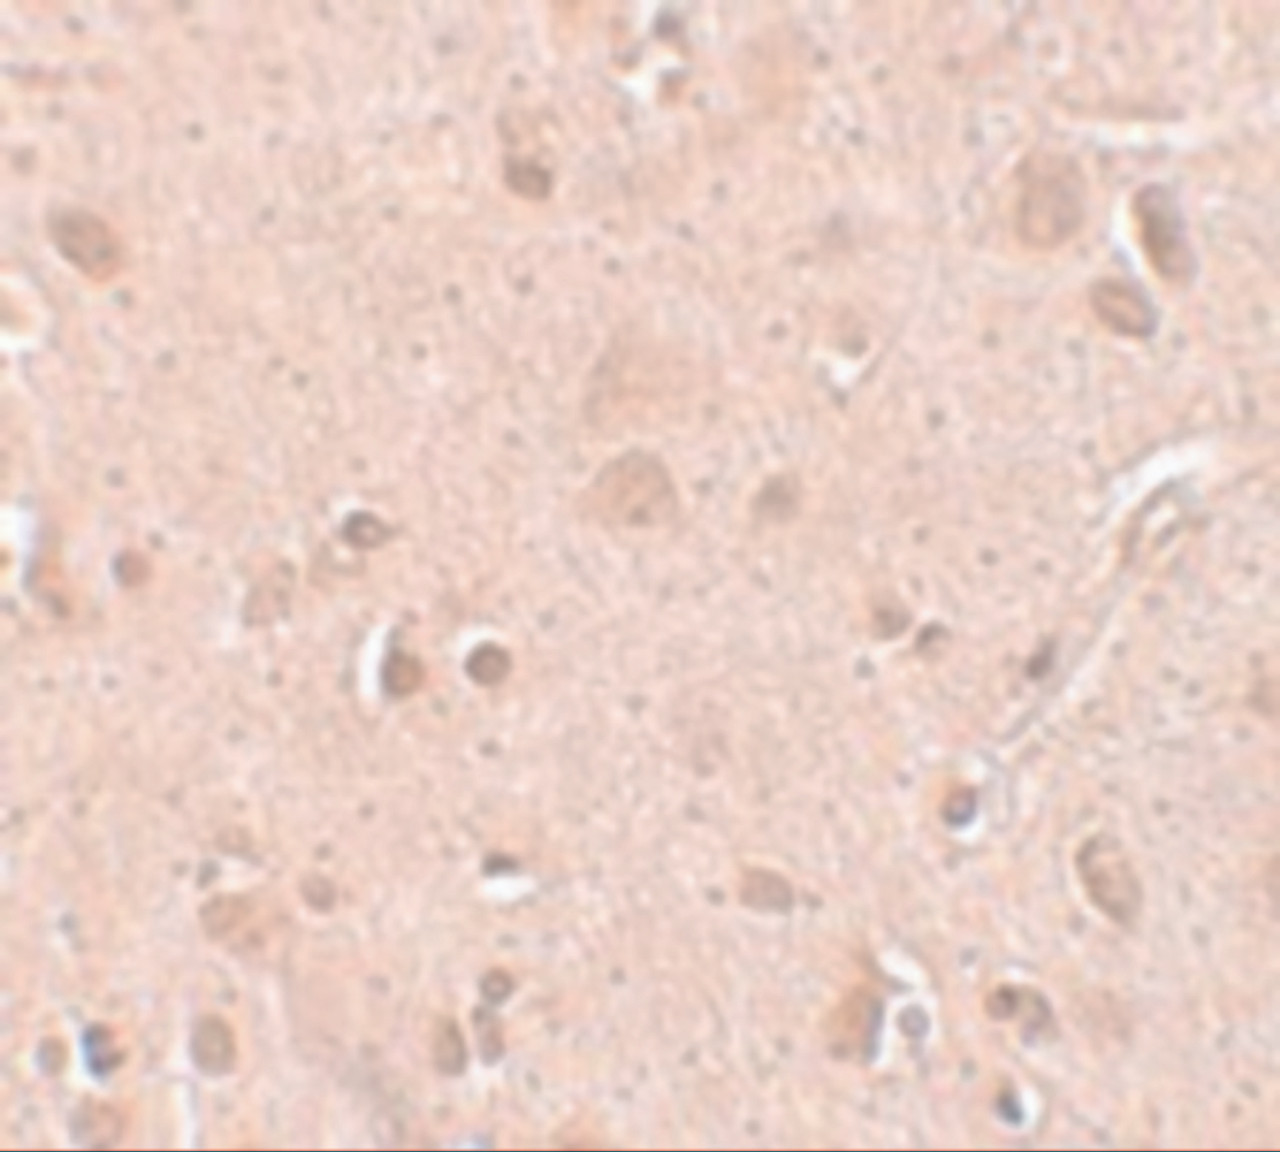 Immunohistochemistry of TINP1 in human brain tissue with TINP1 antibody at 5 ug/mL.